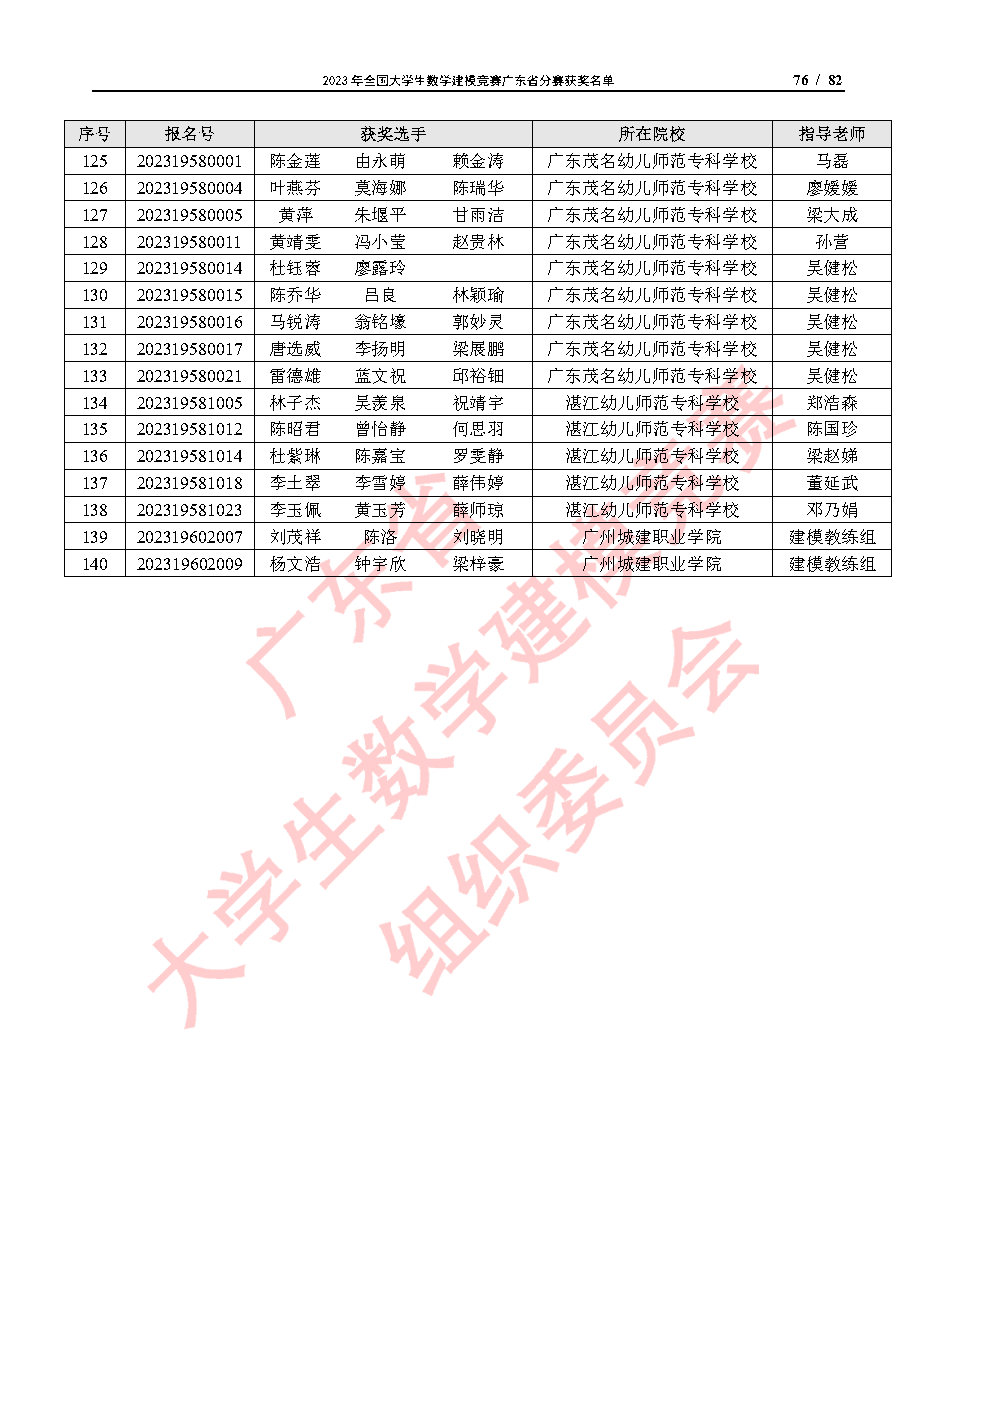 2023年全国大学生数学建模竞赛广东省分赛获奖名单_Page76.jpg